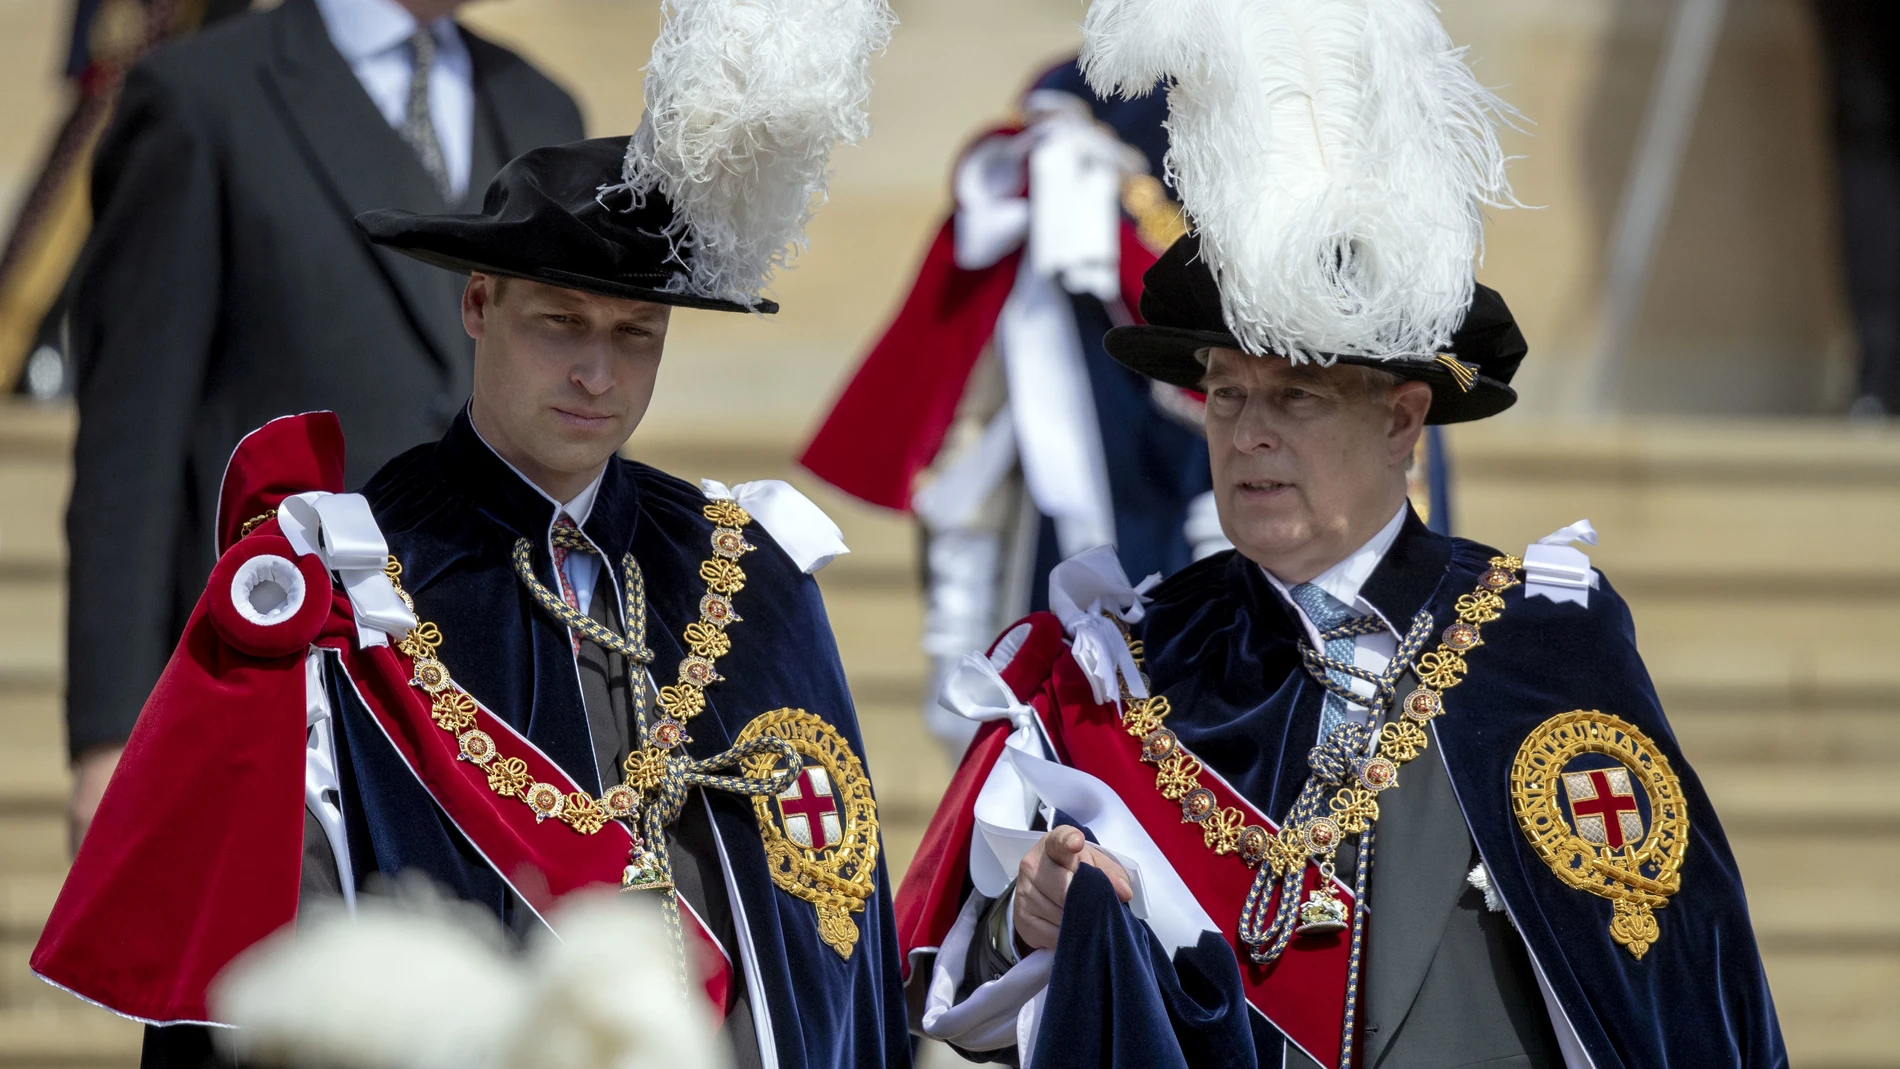 Príncipe William y el príncipe Andrés durante el Día de la Órden de la Jarretera